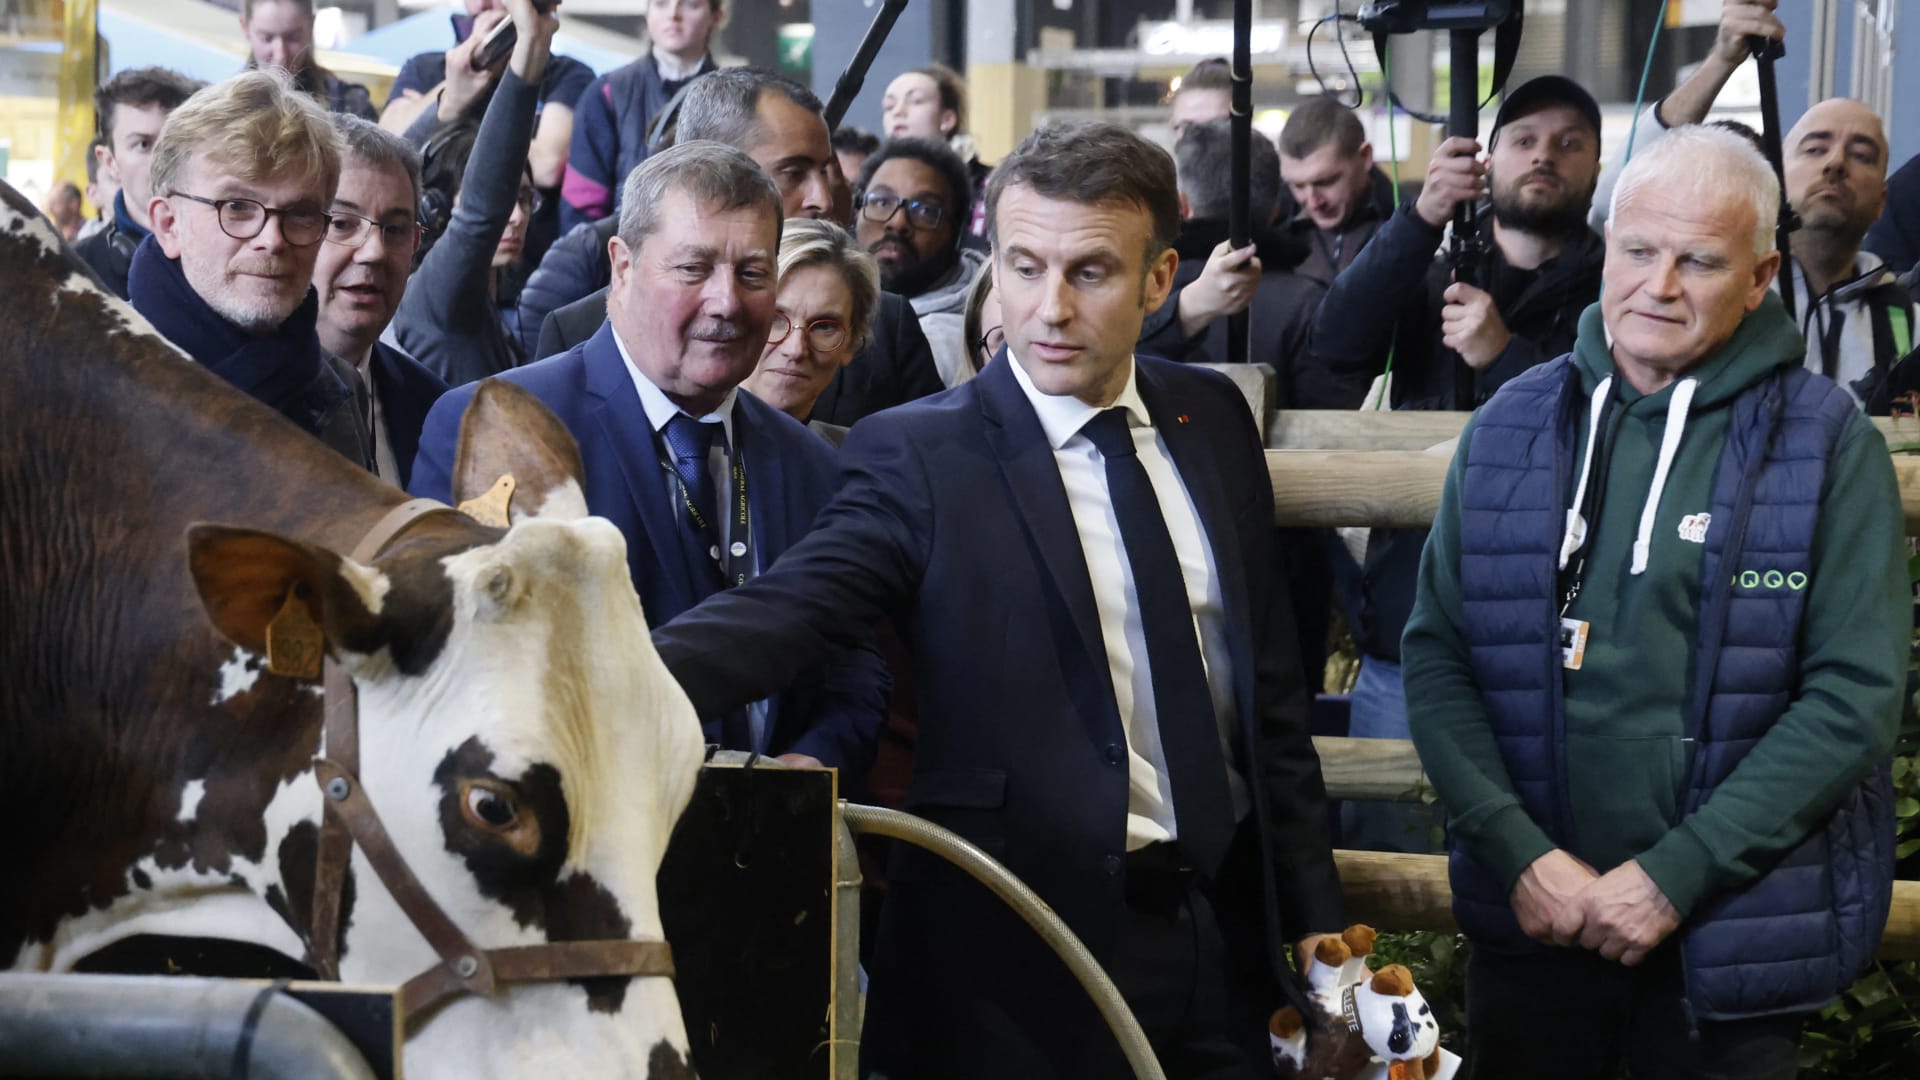 وسط تهديد بـ"حصار باريس".. احتجاجات المزارعين تثير اضطرابًا كبيرًا في فرنسا